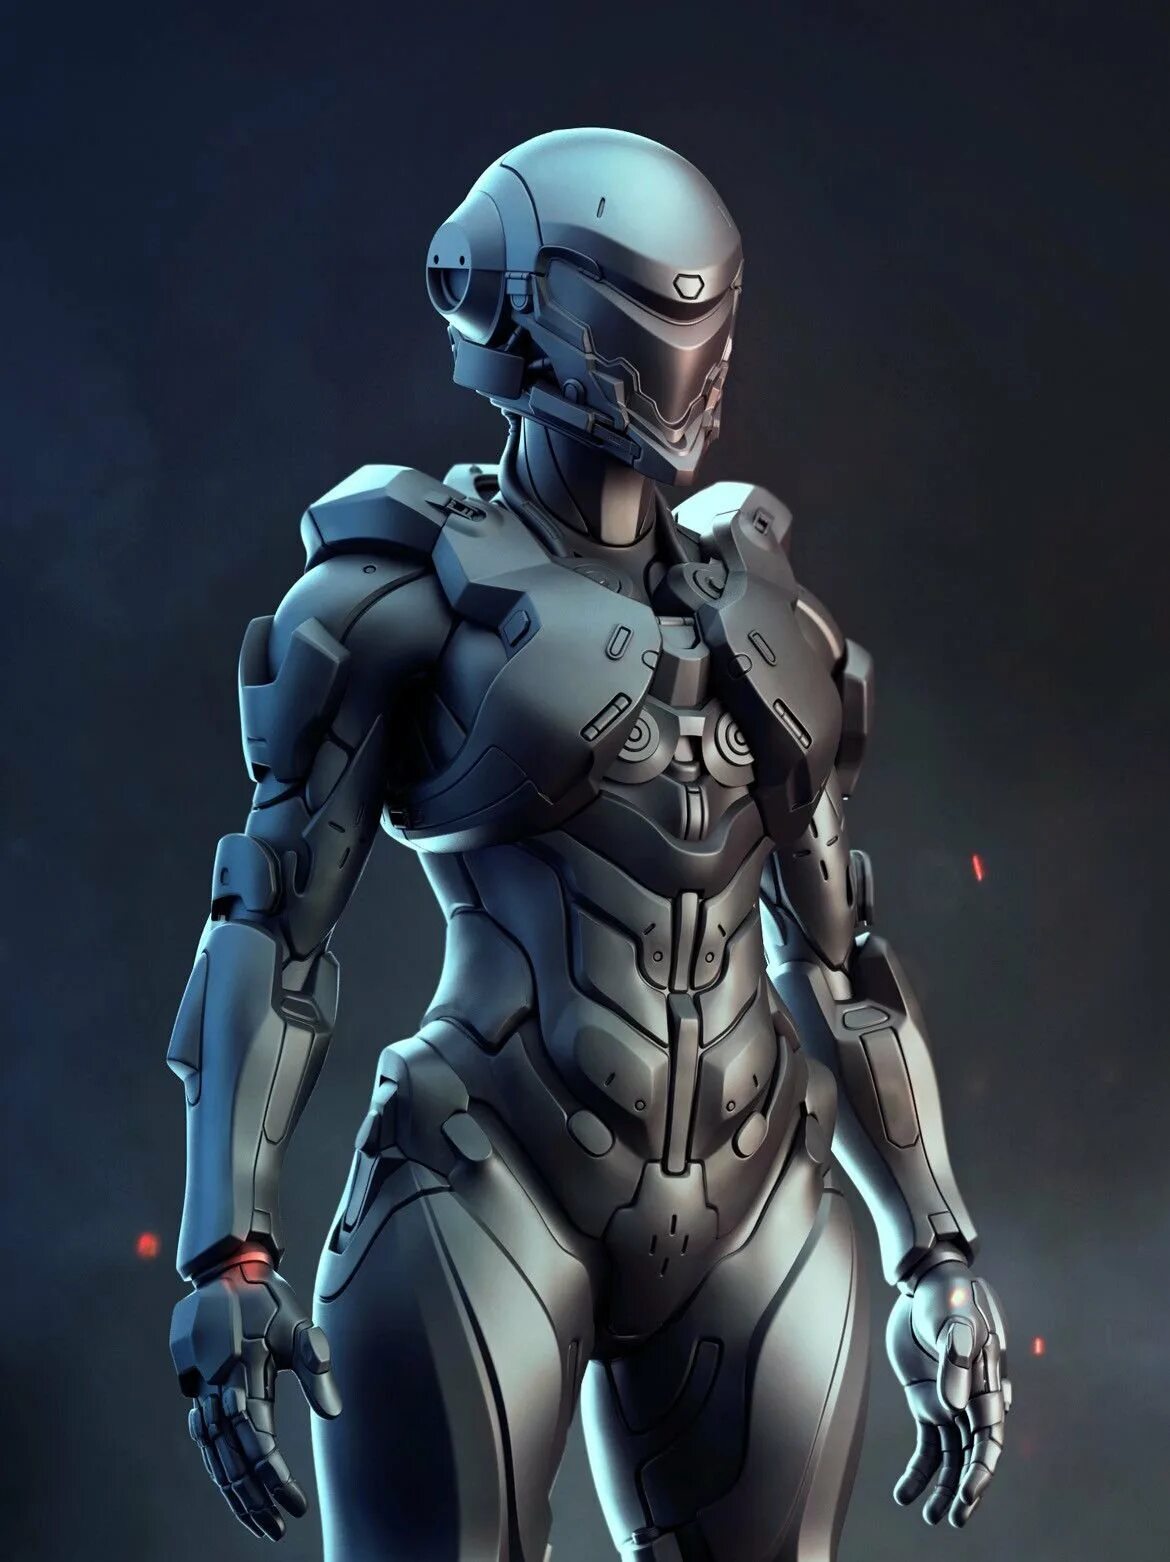 Future android. Экзоскелет Хало. Sci-Fi броня женщина Халло. Хало персонажи. Хало броня женщины.